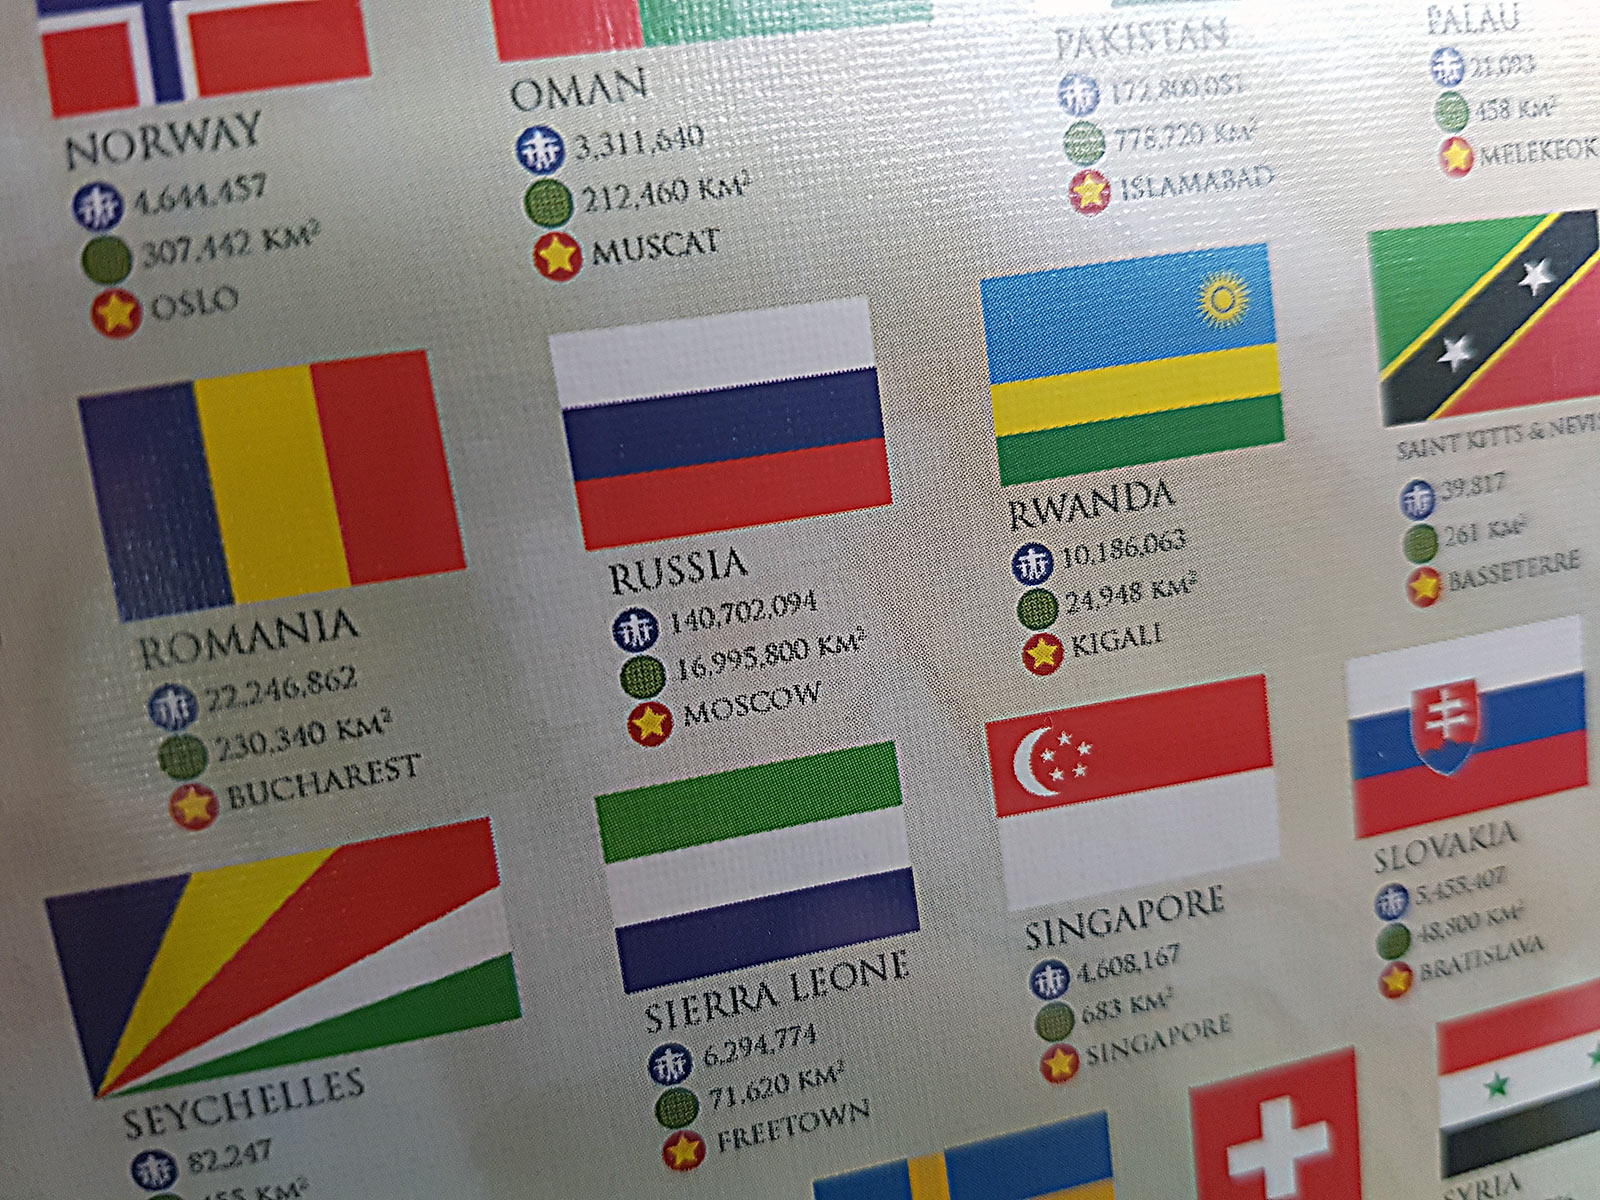 флаги скандинавских стран фото с названиями